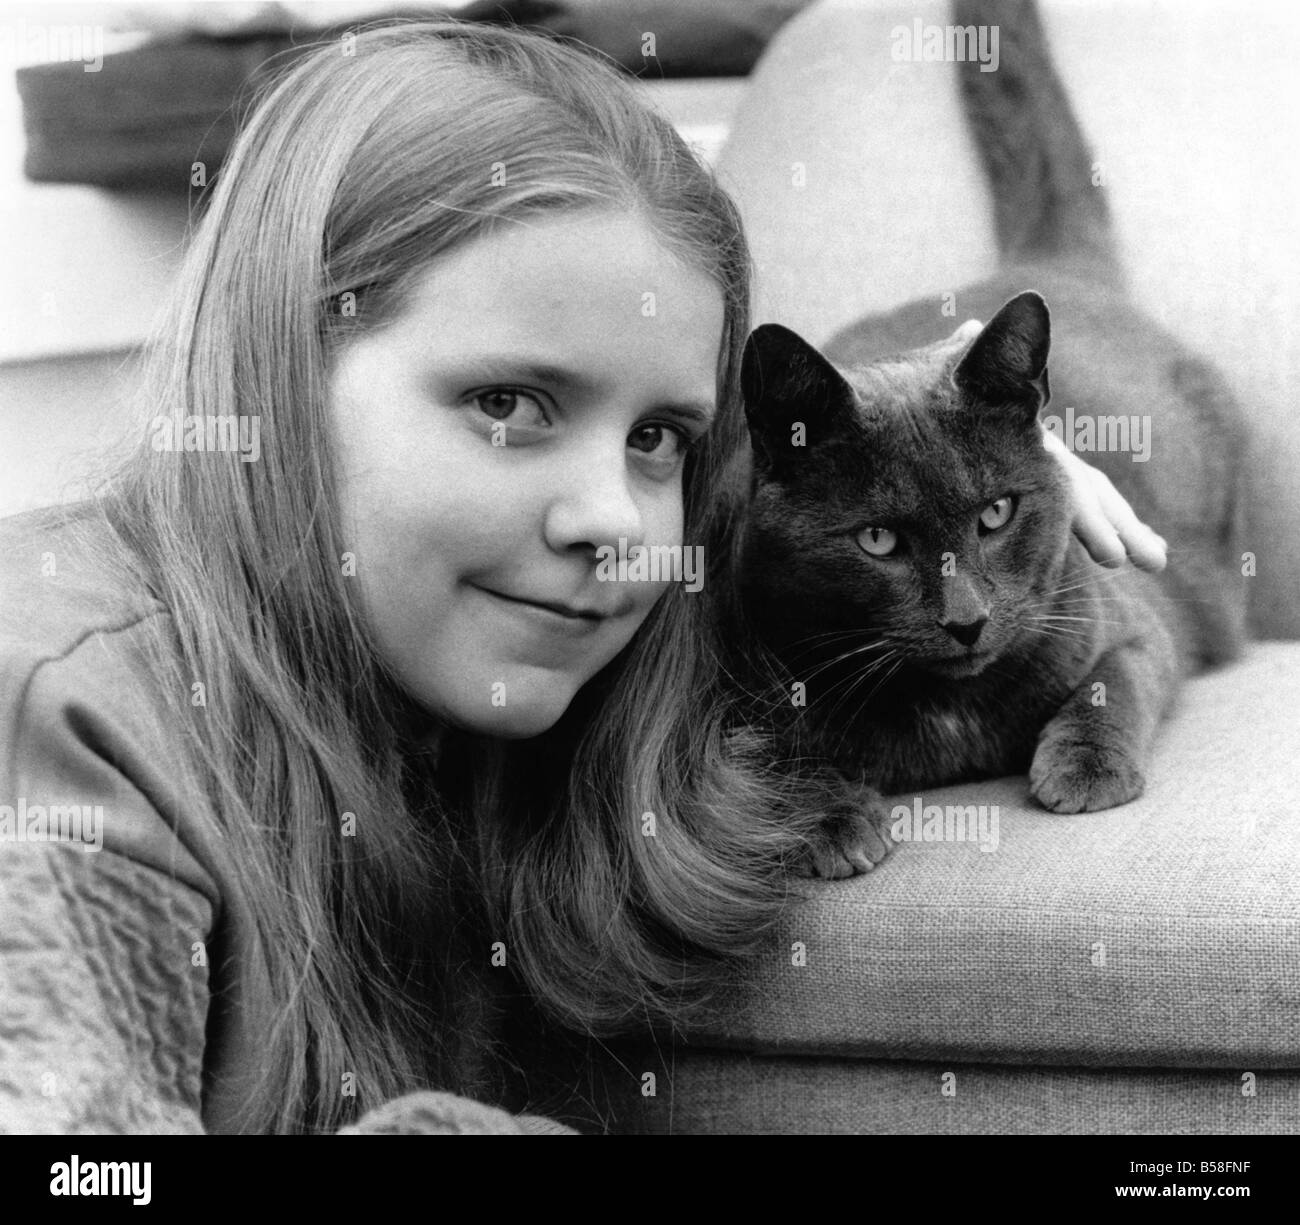 Herbdige Dawn et son chat. Elle dit : "Il est un petit diable'. Mars 1985 P006114 Banque D'Images